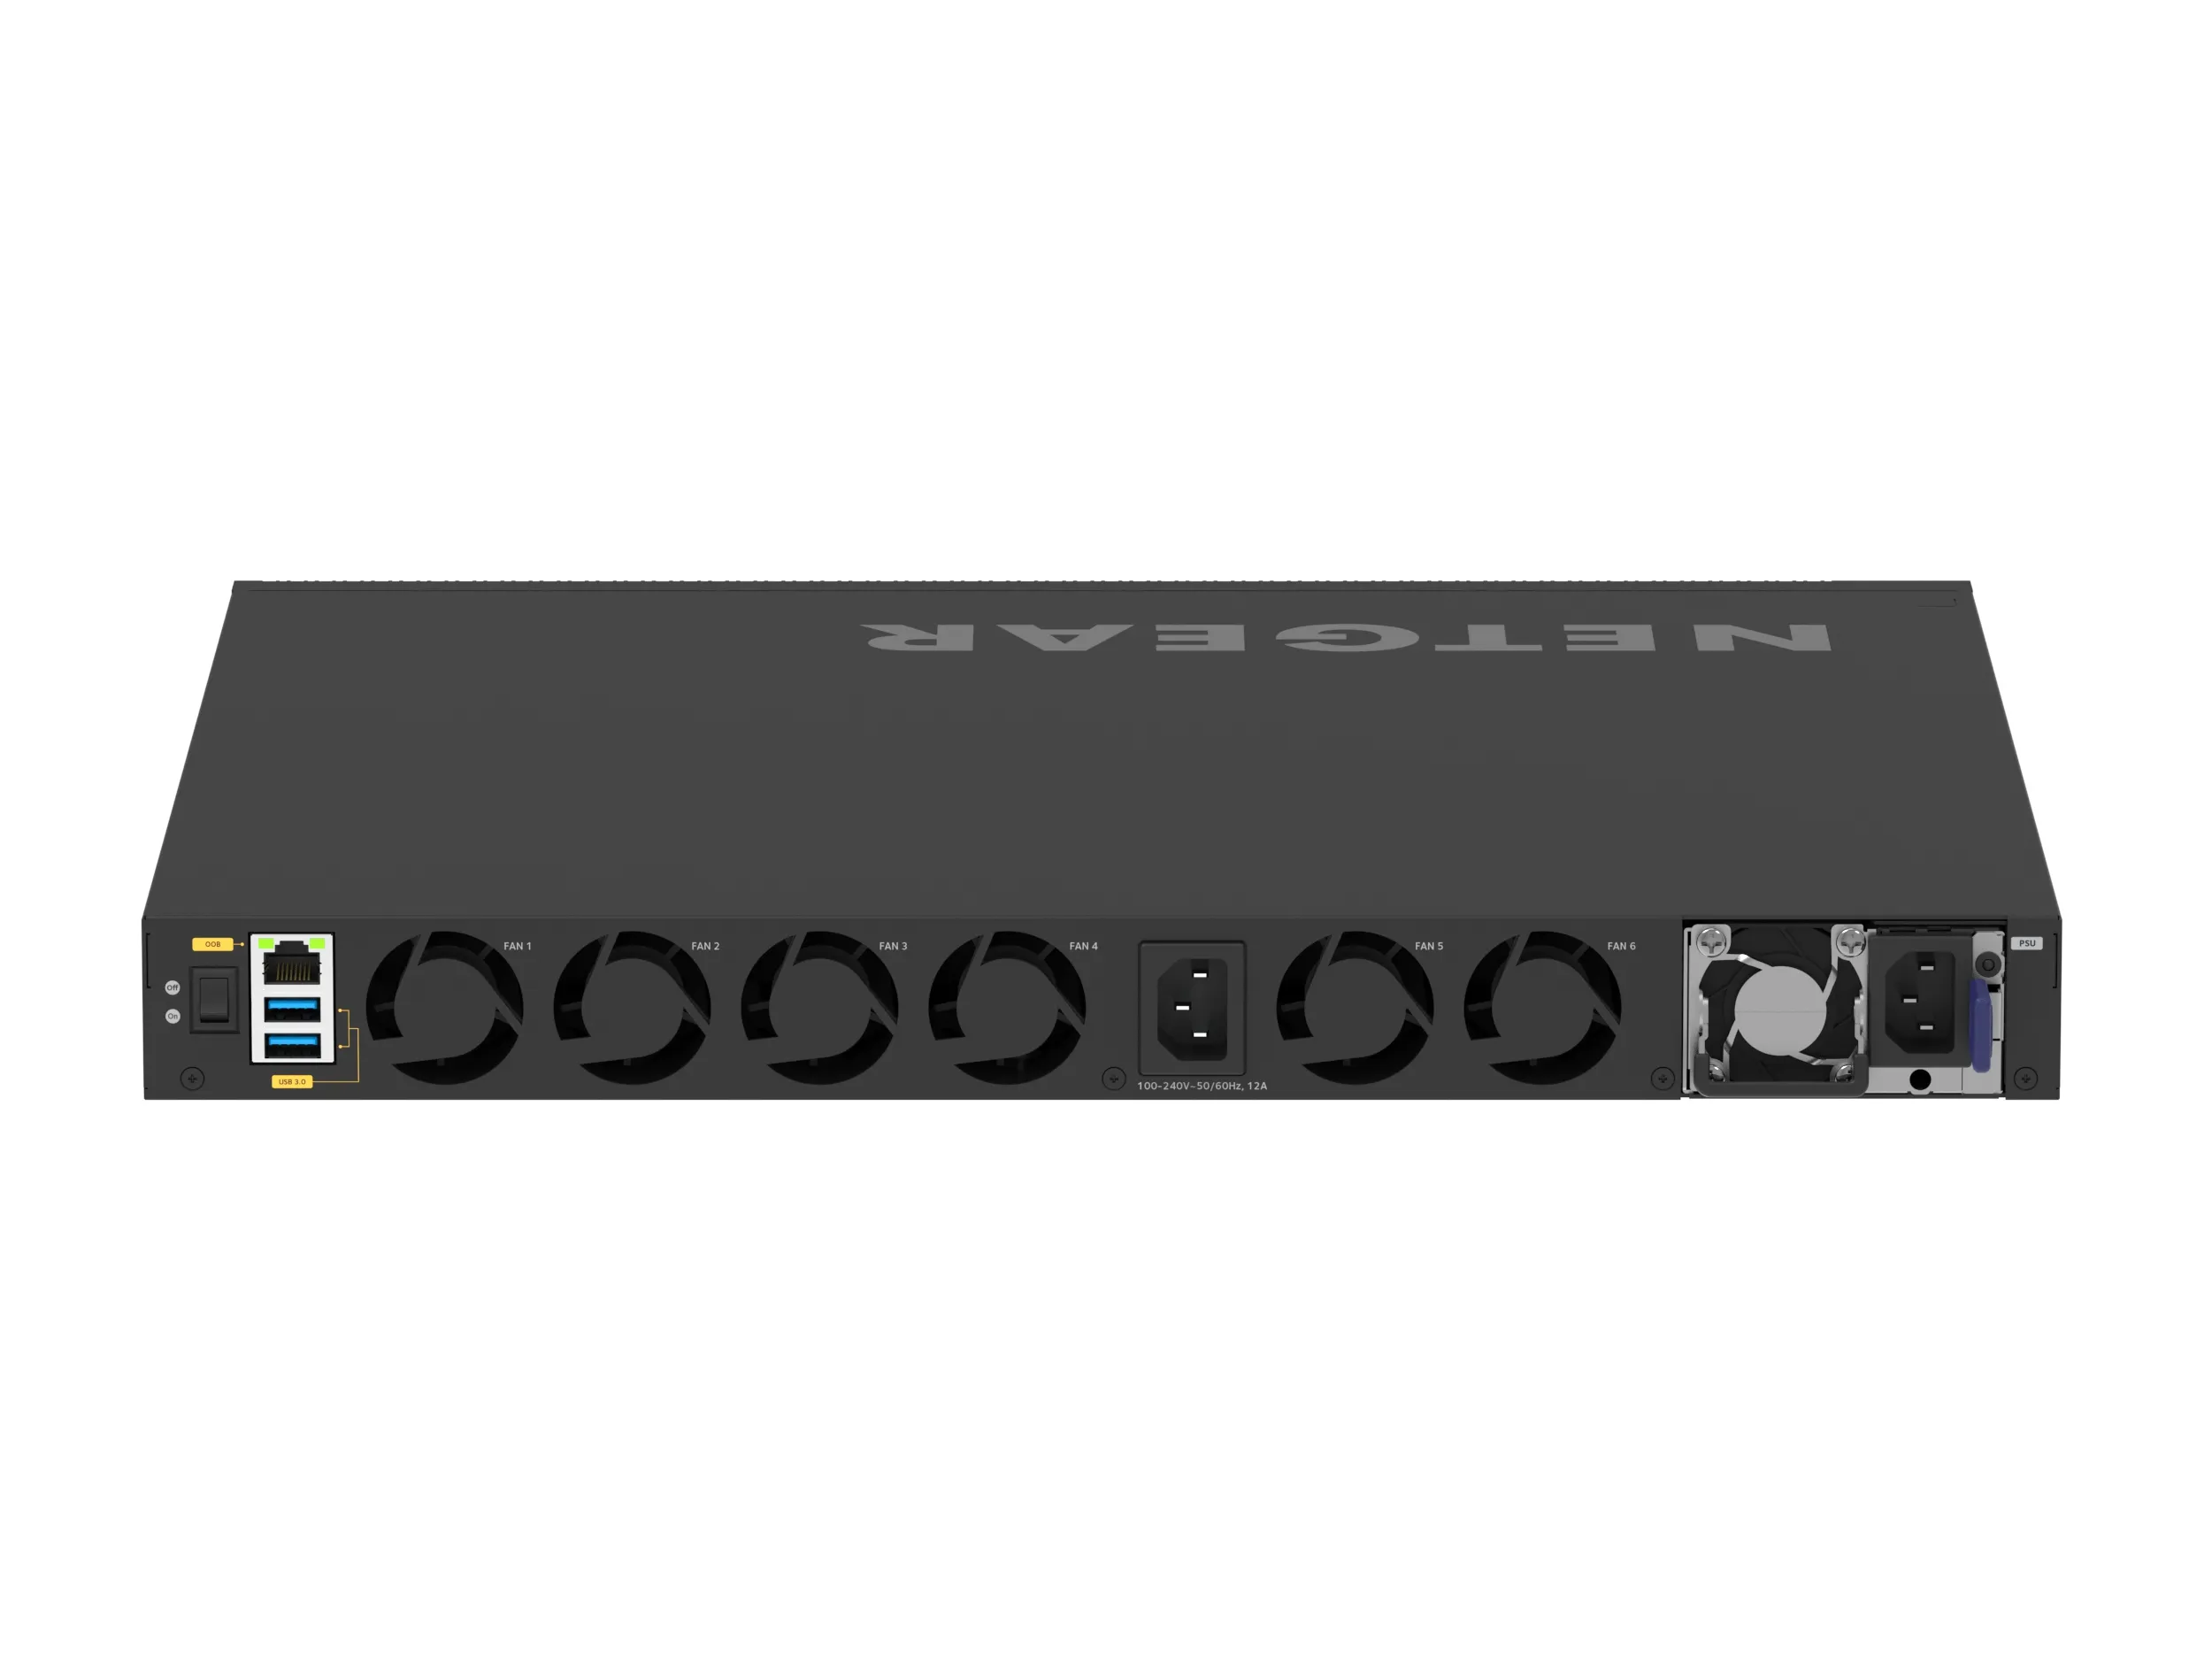 Vente NETGEAR 52PT M4350-40X4C Managed Switch NETGEAR au meilleur prix - visuel 4